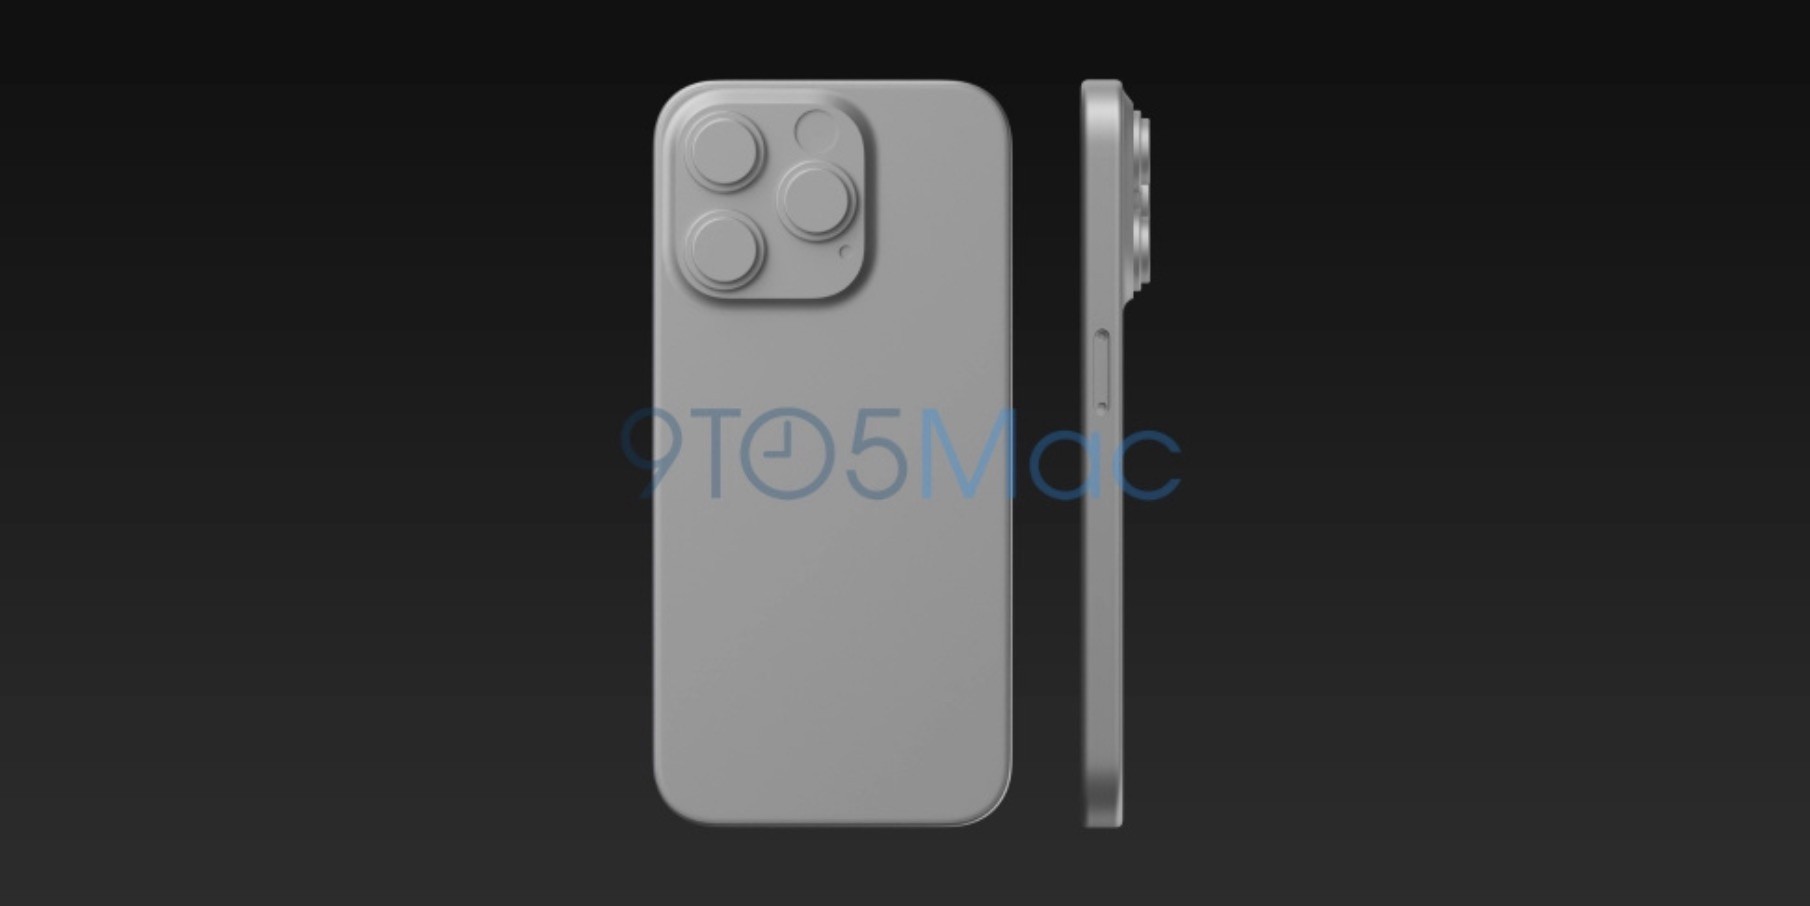 Tak będzie wyglądać iPhone 15 Pro ciekawostki wygląd 15 Pro, iphone 15 pro  Według informacji opublikowanych przez serwis 9to5Mac i MacRumors, iPhone 15 Pro będzie kilka istotnych zmian w wyglądzie i konstrukcji. Oto rendery. ip15pro 2